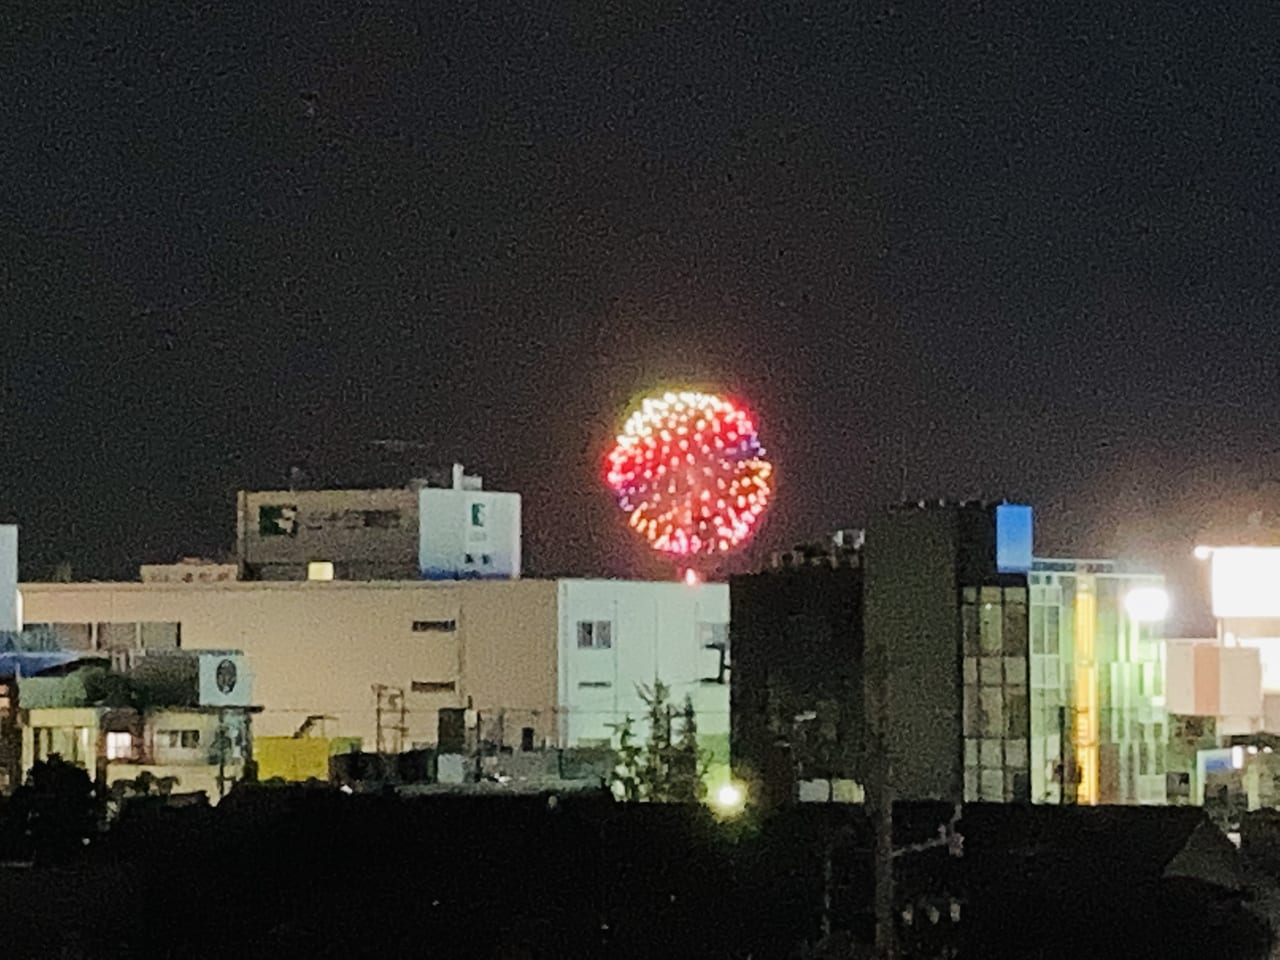 松阪市 三谷うなぎ屋 のサプライズ花火があがりました 次は うなぎで感謝フェアを開催中ですよ 号外net 松阪市